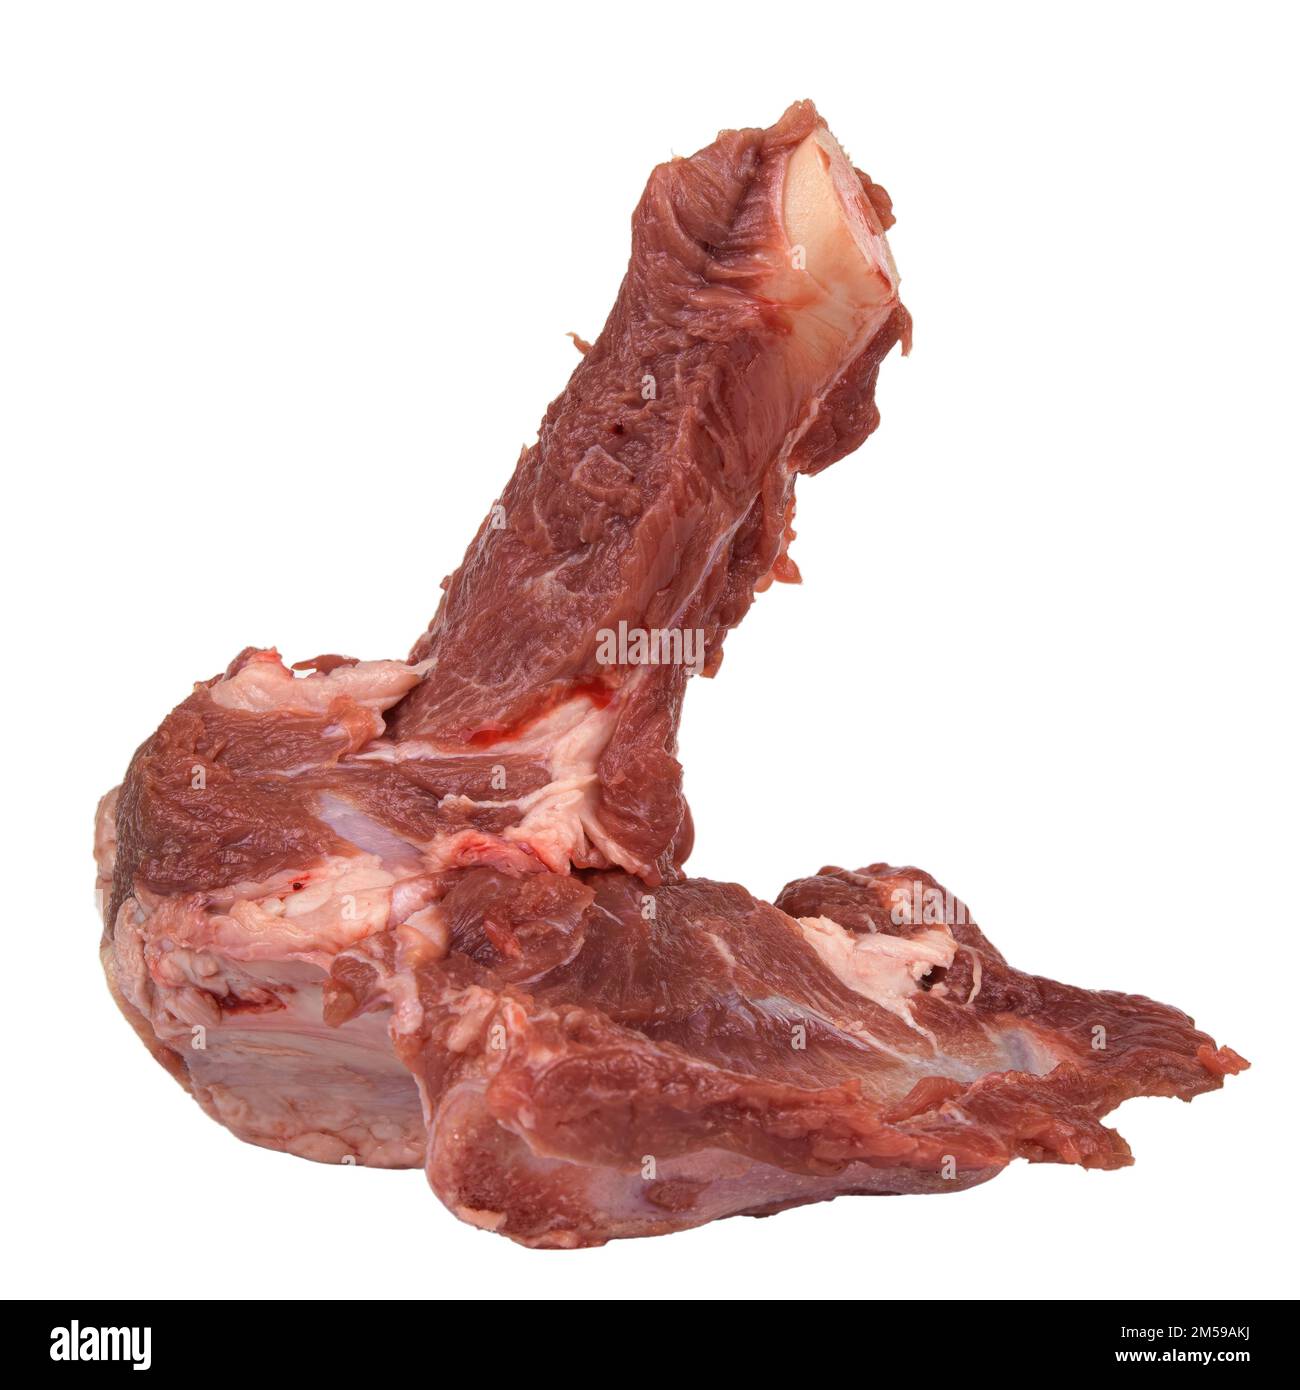 Lamb bone ingredient Stock Photo